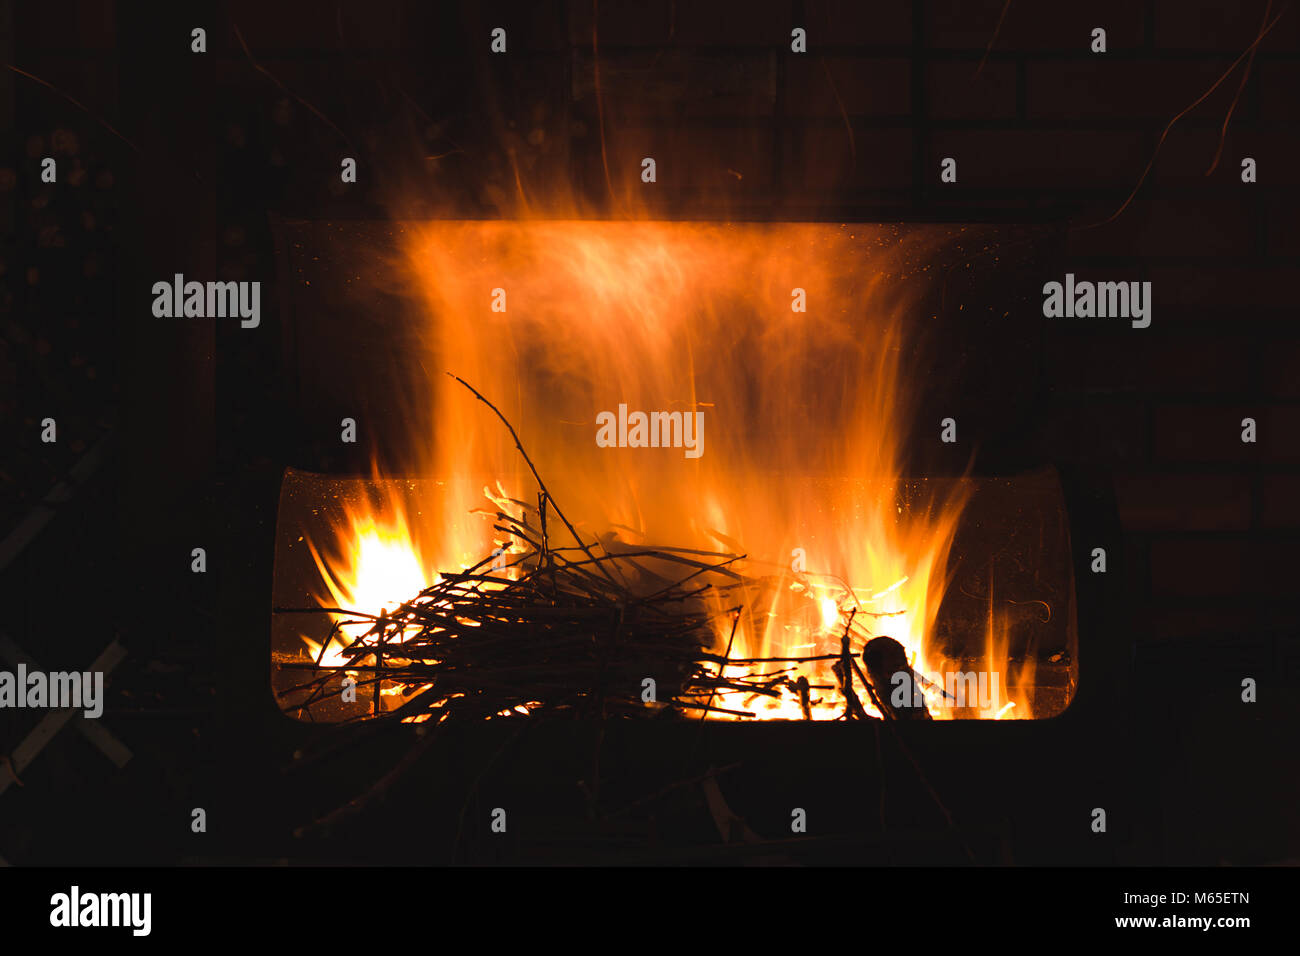 La combustione di legna da ardere e rami per il carbone, una lunga esposizione foto di fuoco Foto Stock